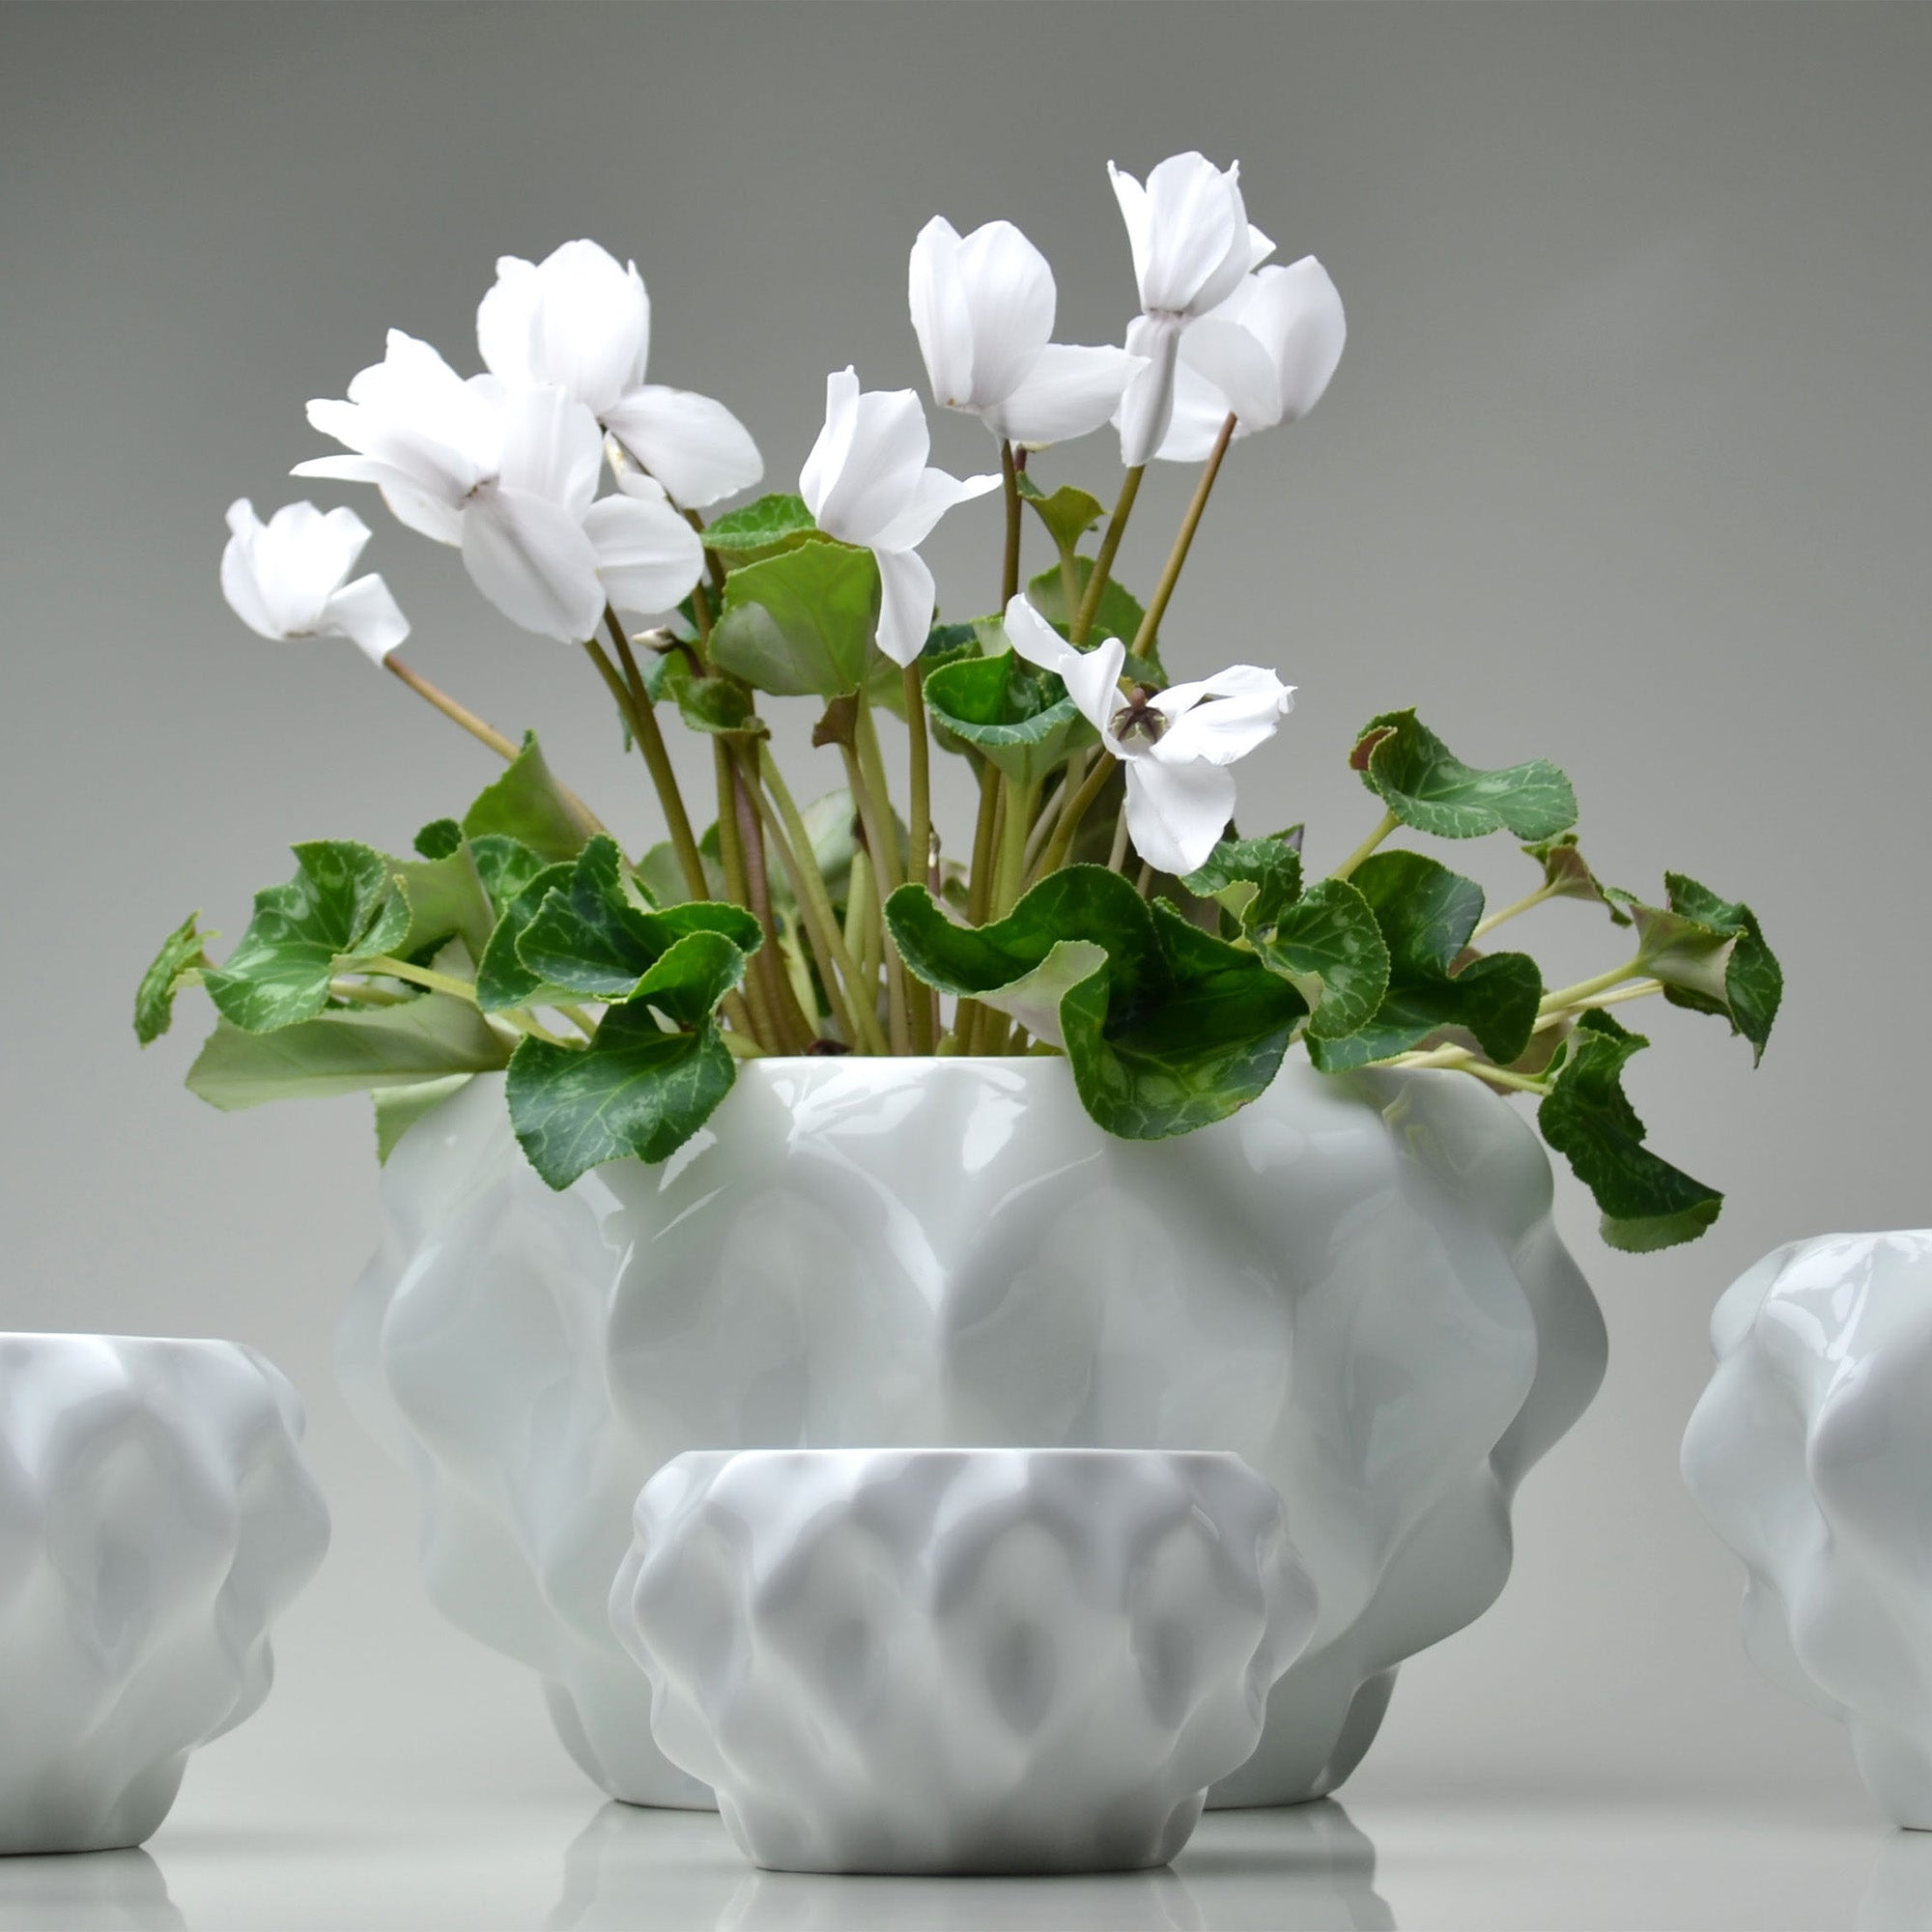 Plissan M Porcelain Pot (h12 cm) - Holaria